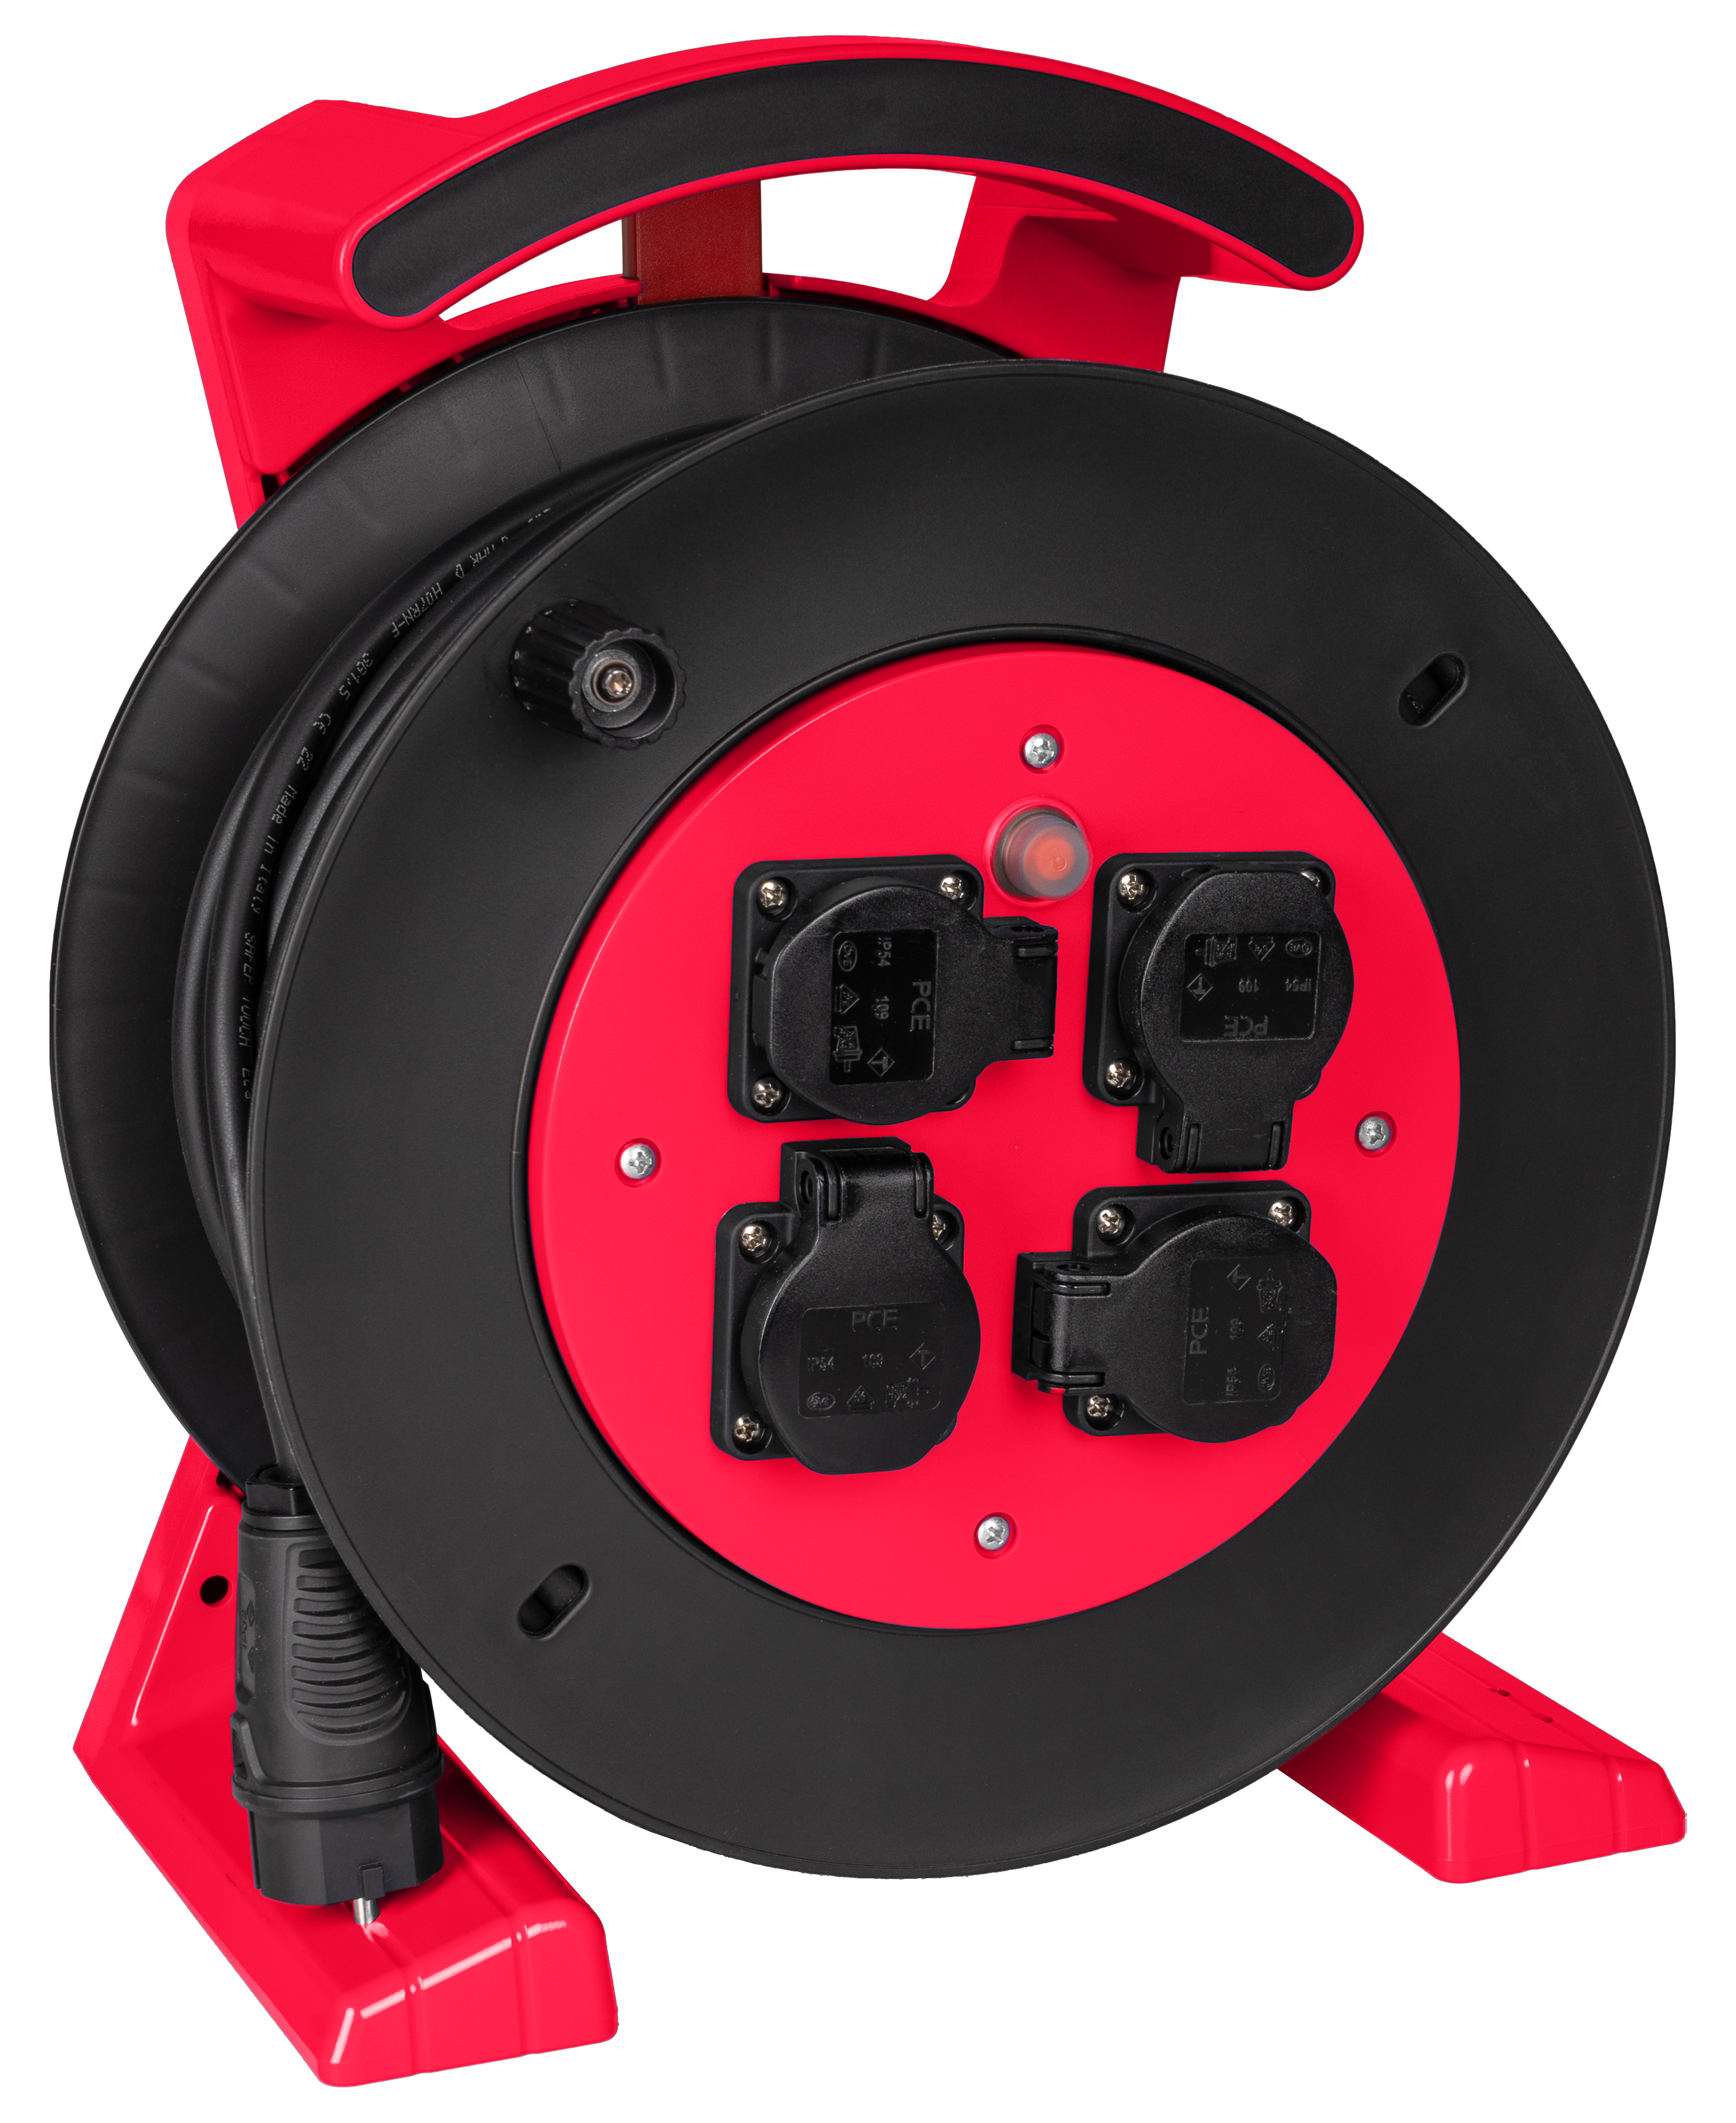 JUMBO kabelhaspel 2.0 in rood-zwart, 4 contactdozen, H07RN-F 3G1,5 mm², 40 m